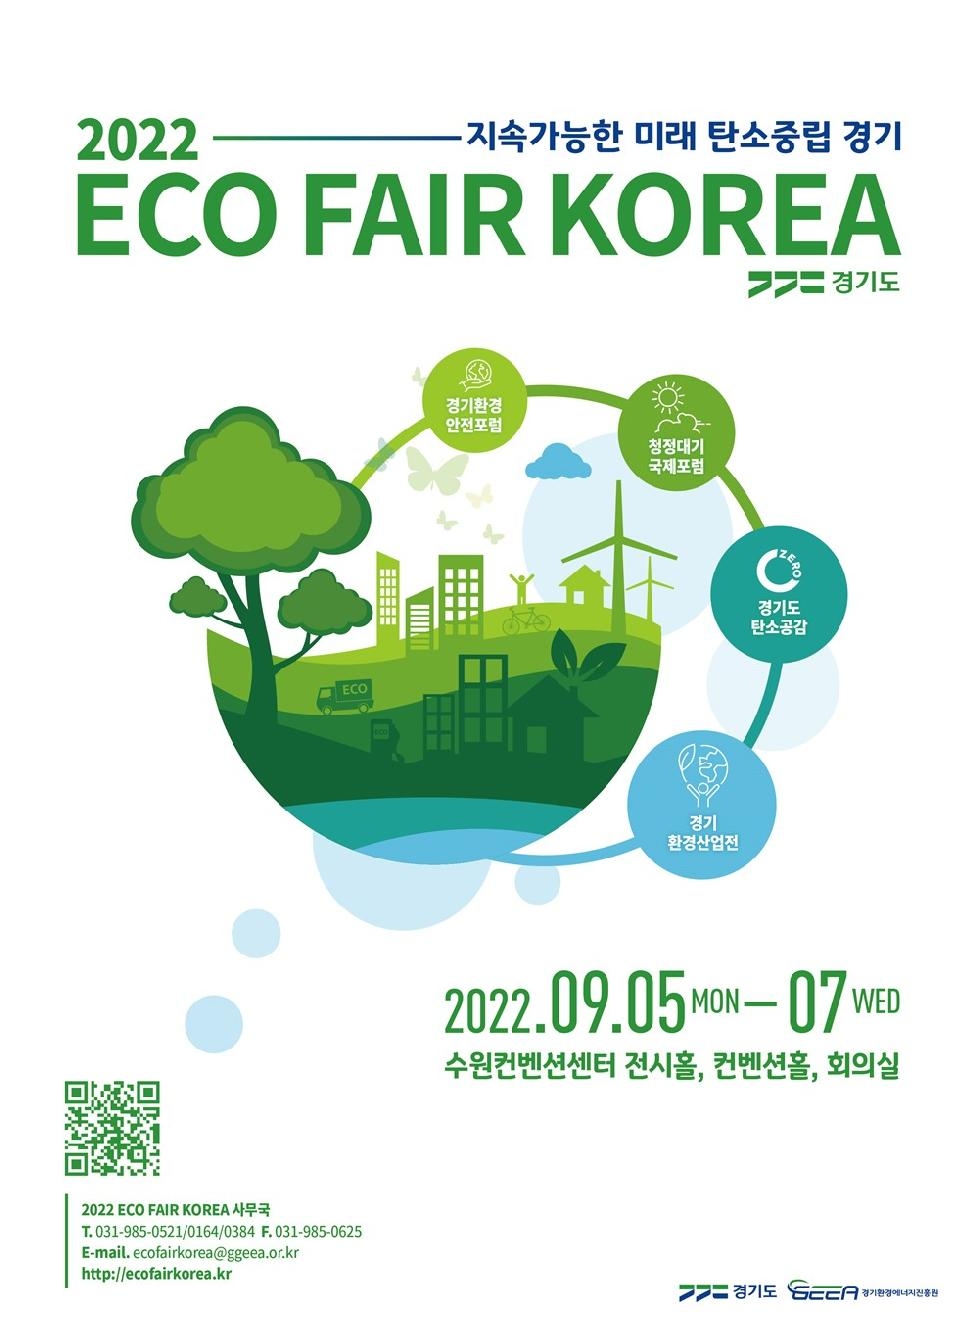 경기도, 5~7일 ‘에코 페어 코리아 2022’ 개최…4개 행사로 구성된 환경종합전시회